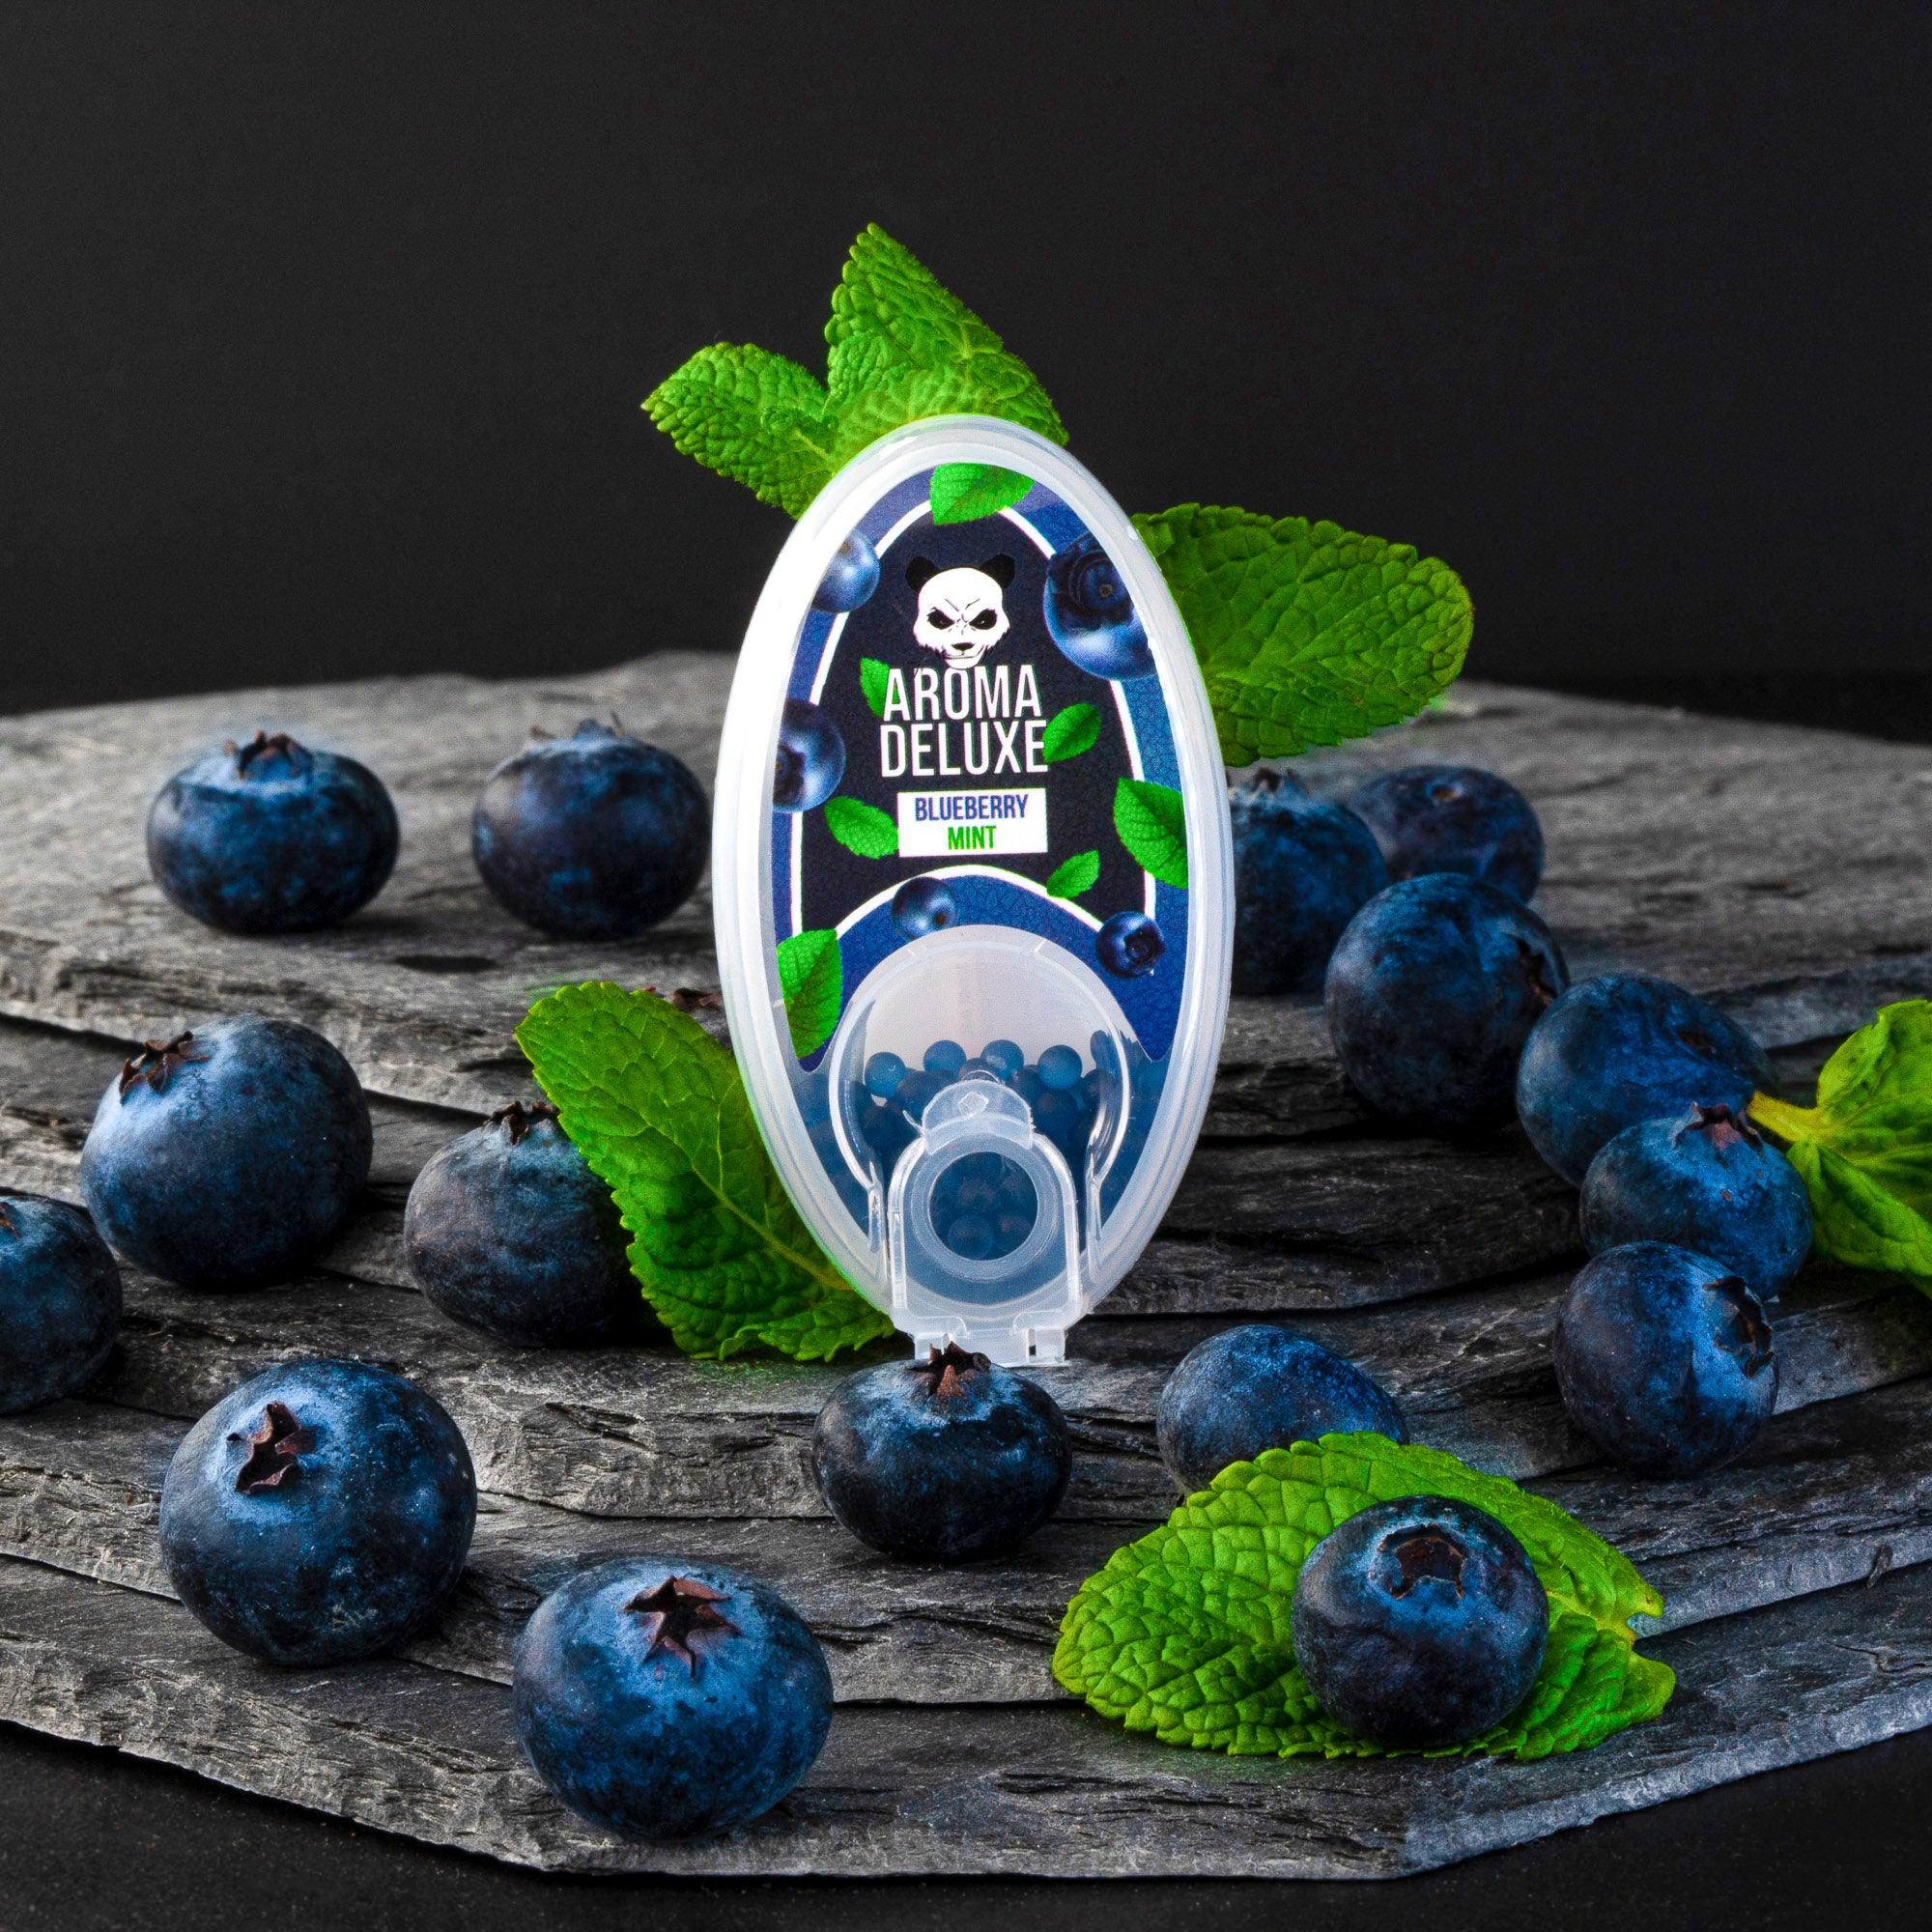 Blueberry Mint Aromakugeln - Aroma Deluxe